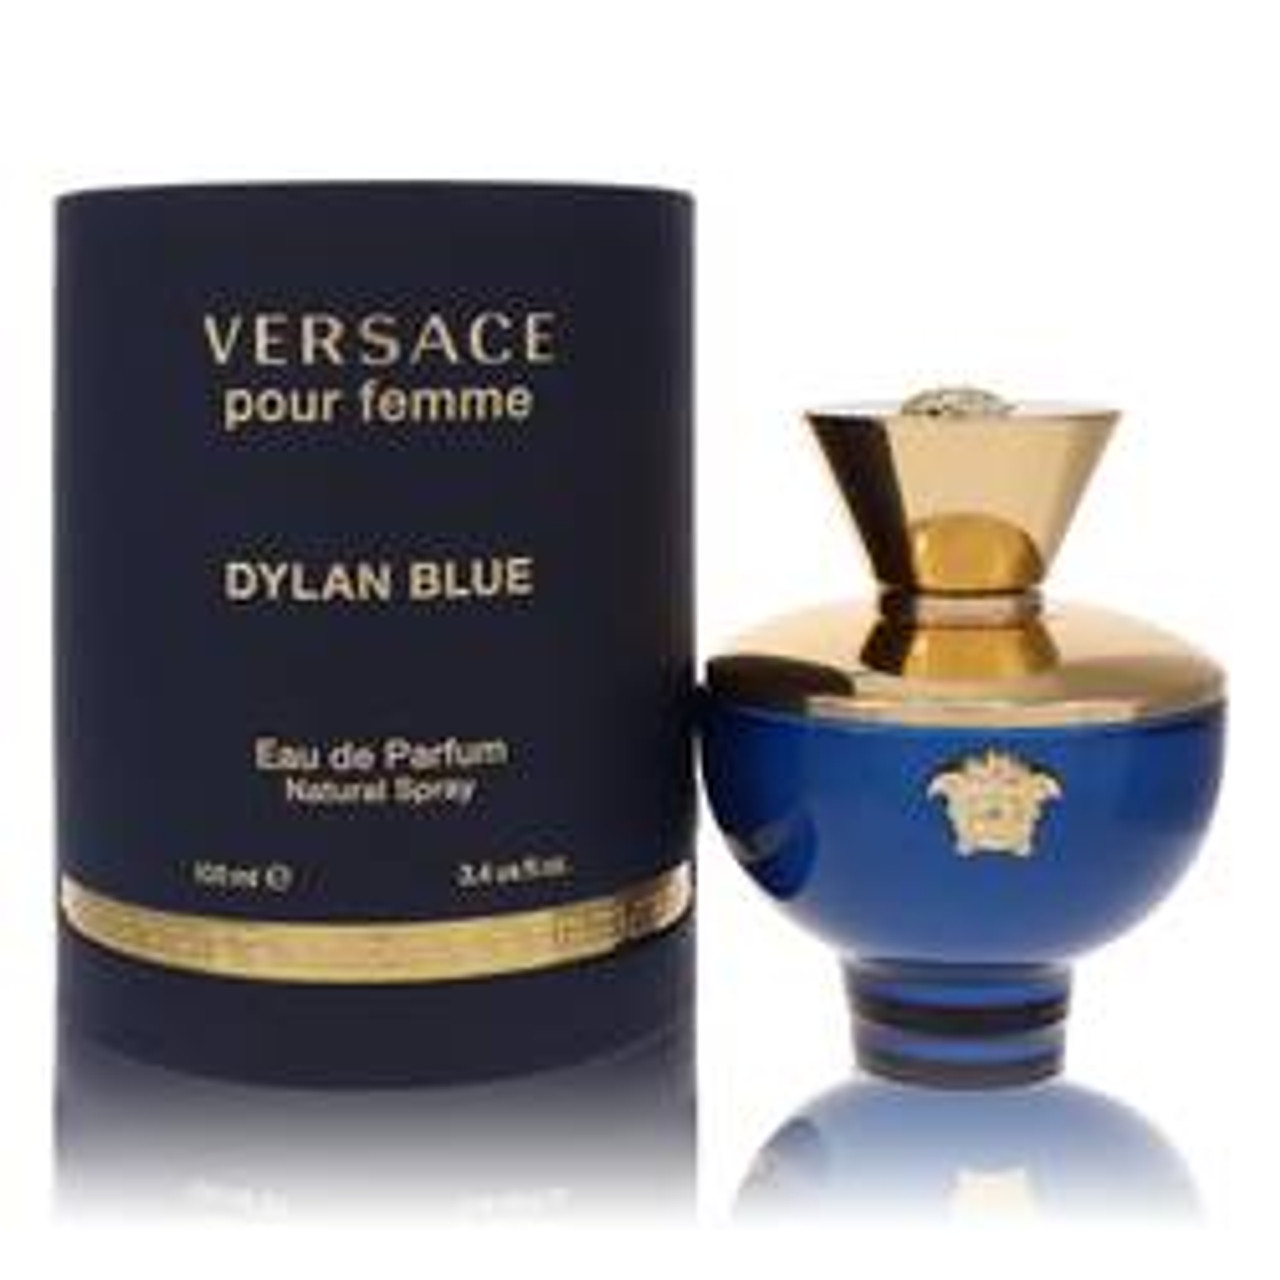 Versace Pour Femme Dylan Blue Perfume By Versace Eau De Parfum Spray 3.4 oz for Women - *Pre-Order